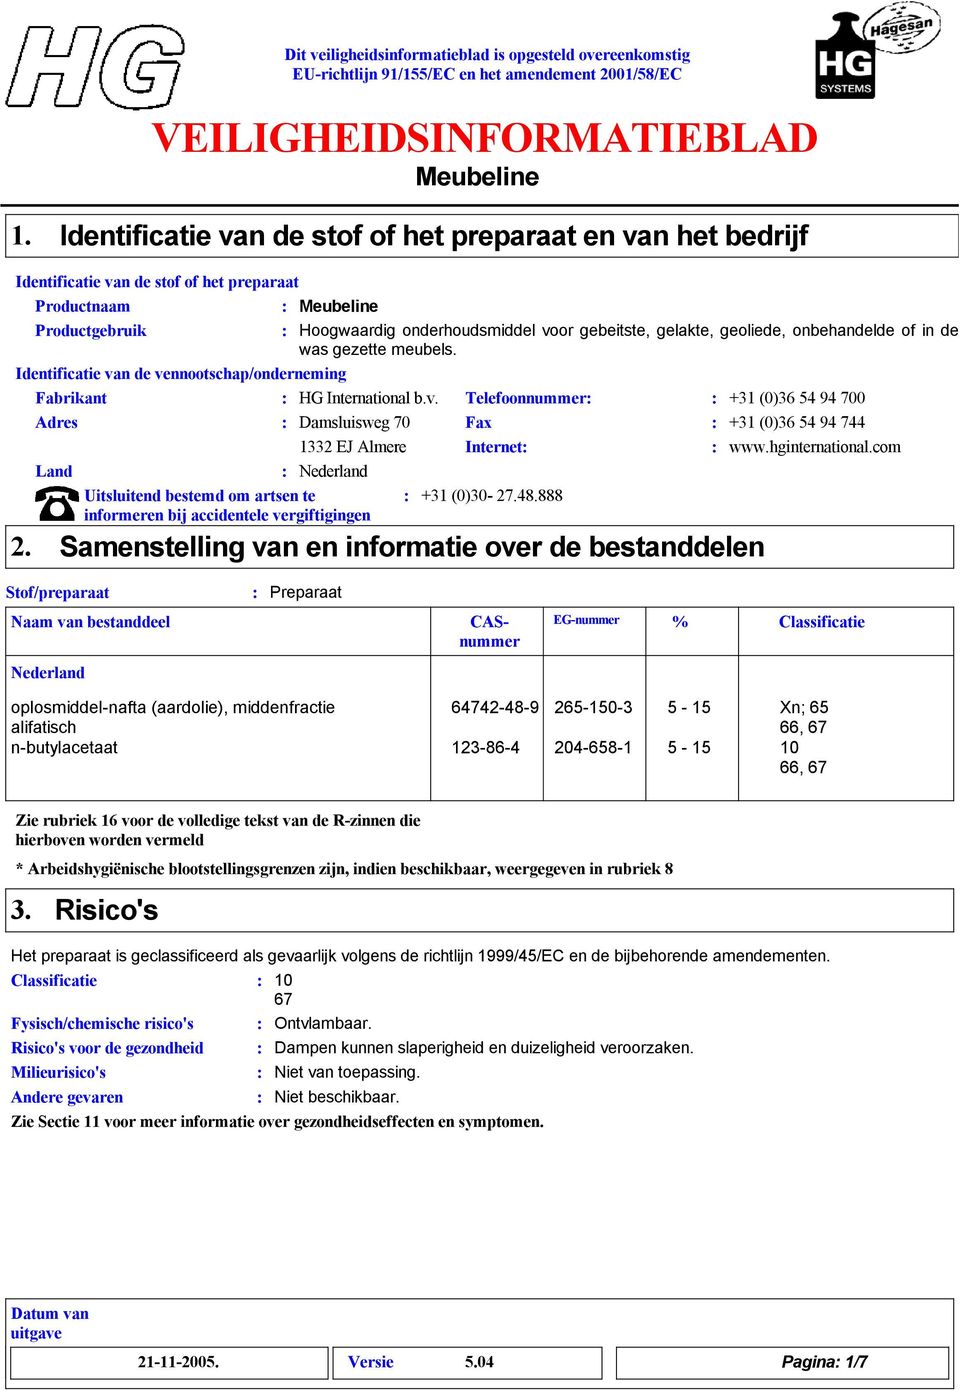 hginternational.com Land Uitsluitend bestemd om artsen te +1 (0)0-27.48.888 informeren bij accidentele vergiftigingen 2.